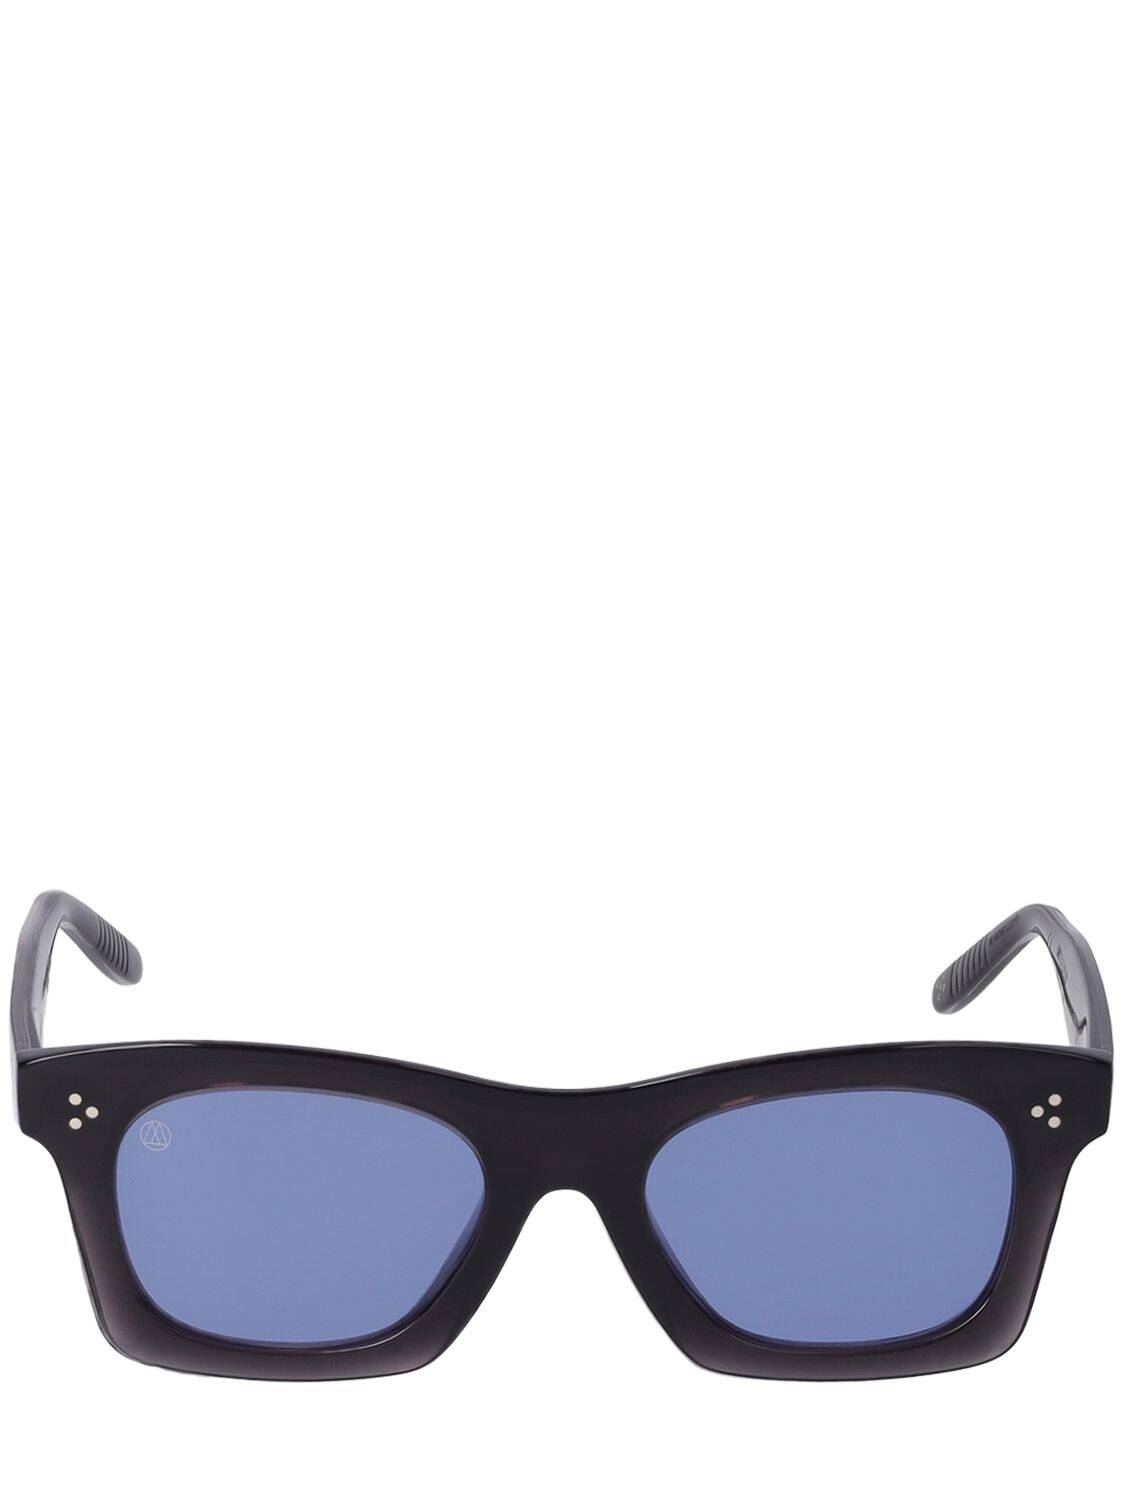 OTTOMILA Martini Tuxedo Acetate Sunglasses in black / blue